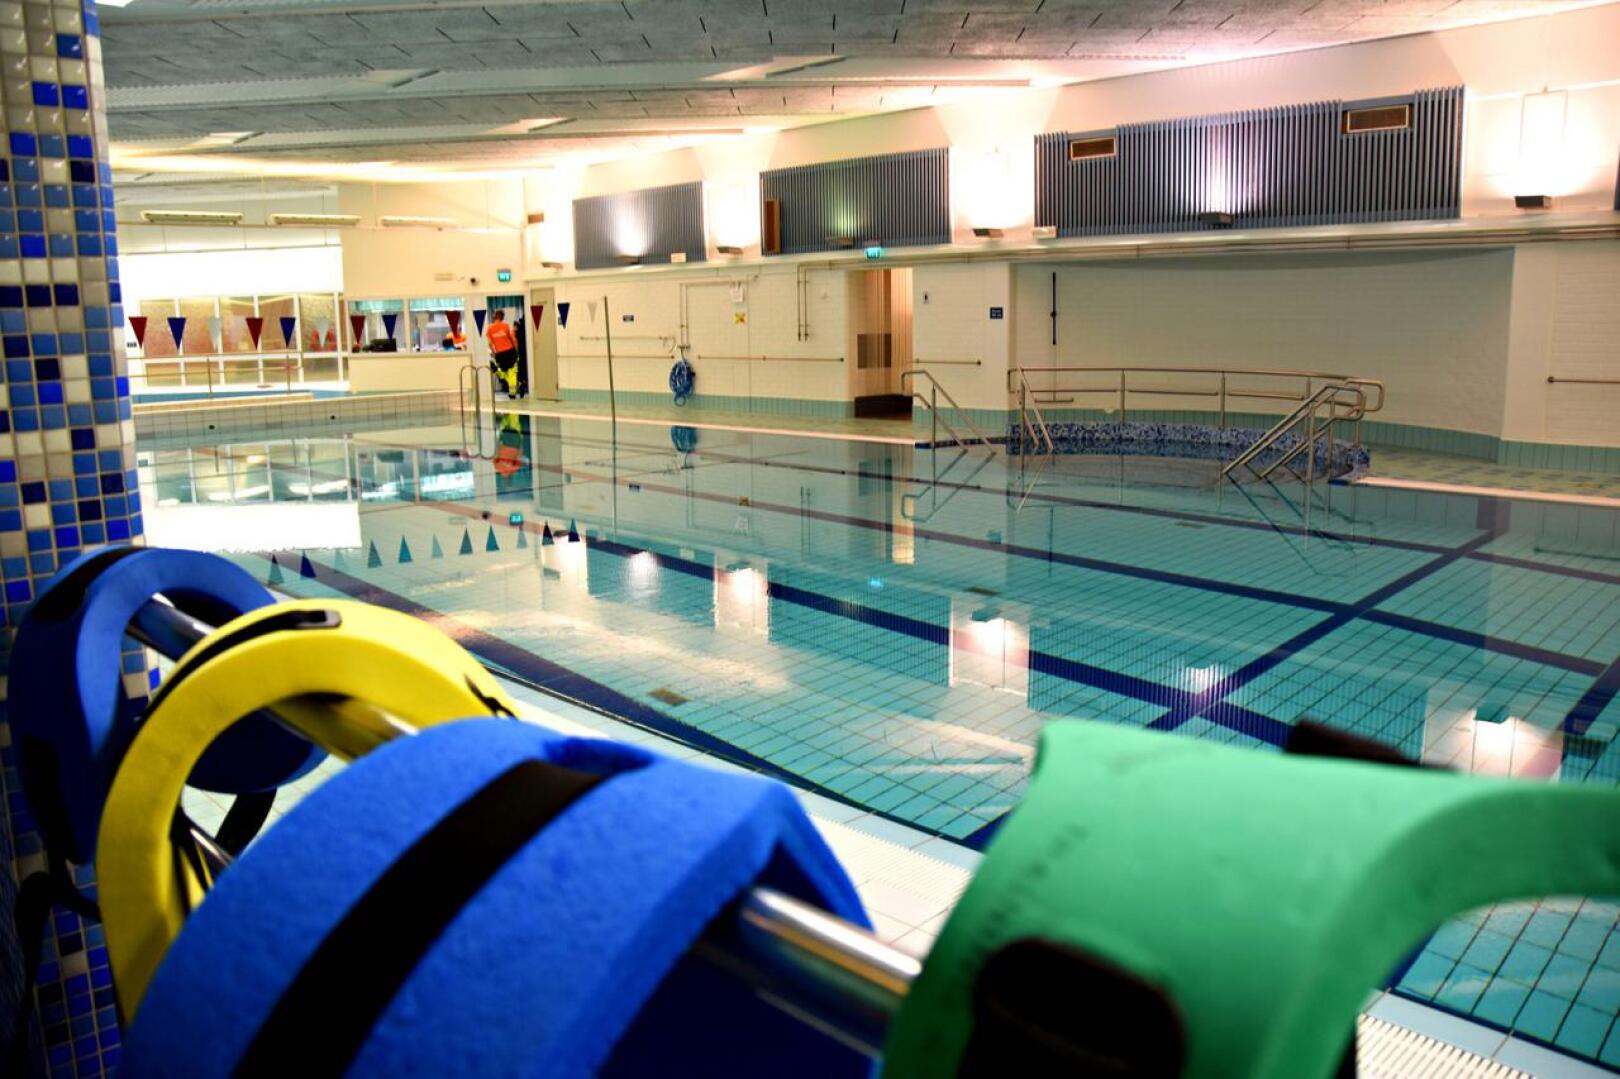 Uimahallissa avattiin sulun jälkeen maanantaina kello 16, ja altaaseen oli heti tulijoita. Kävijöitä on liikuntasihteeri Kati Mäntylän mukaan riittänyt alkuviikosta muutenkin yllättävän hyvin.